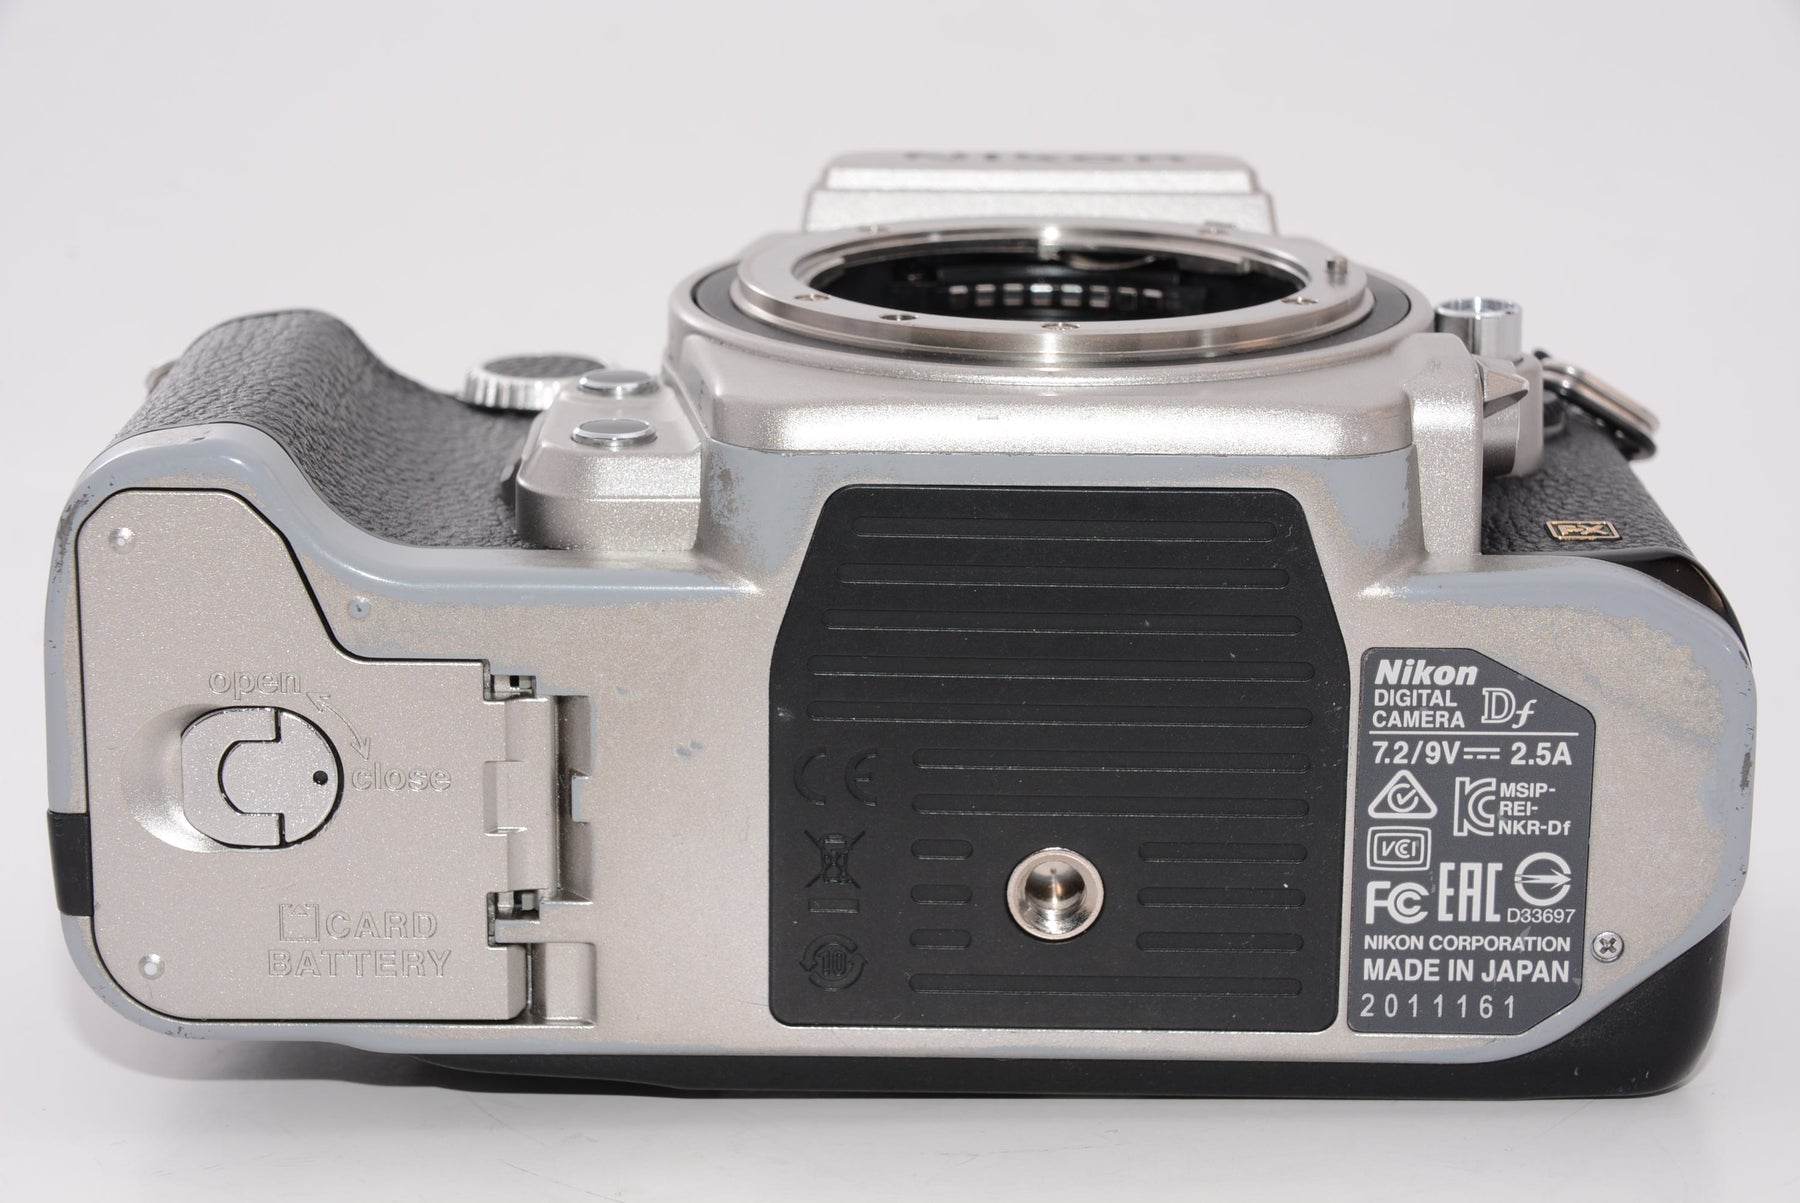 Nikon デジタル一眼レフカメラ Df シルバーDFSL - 5